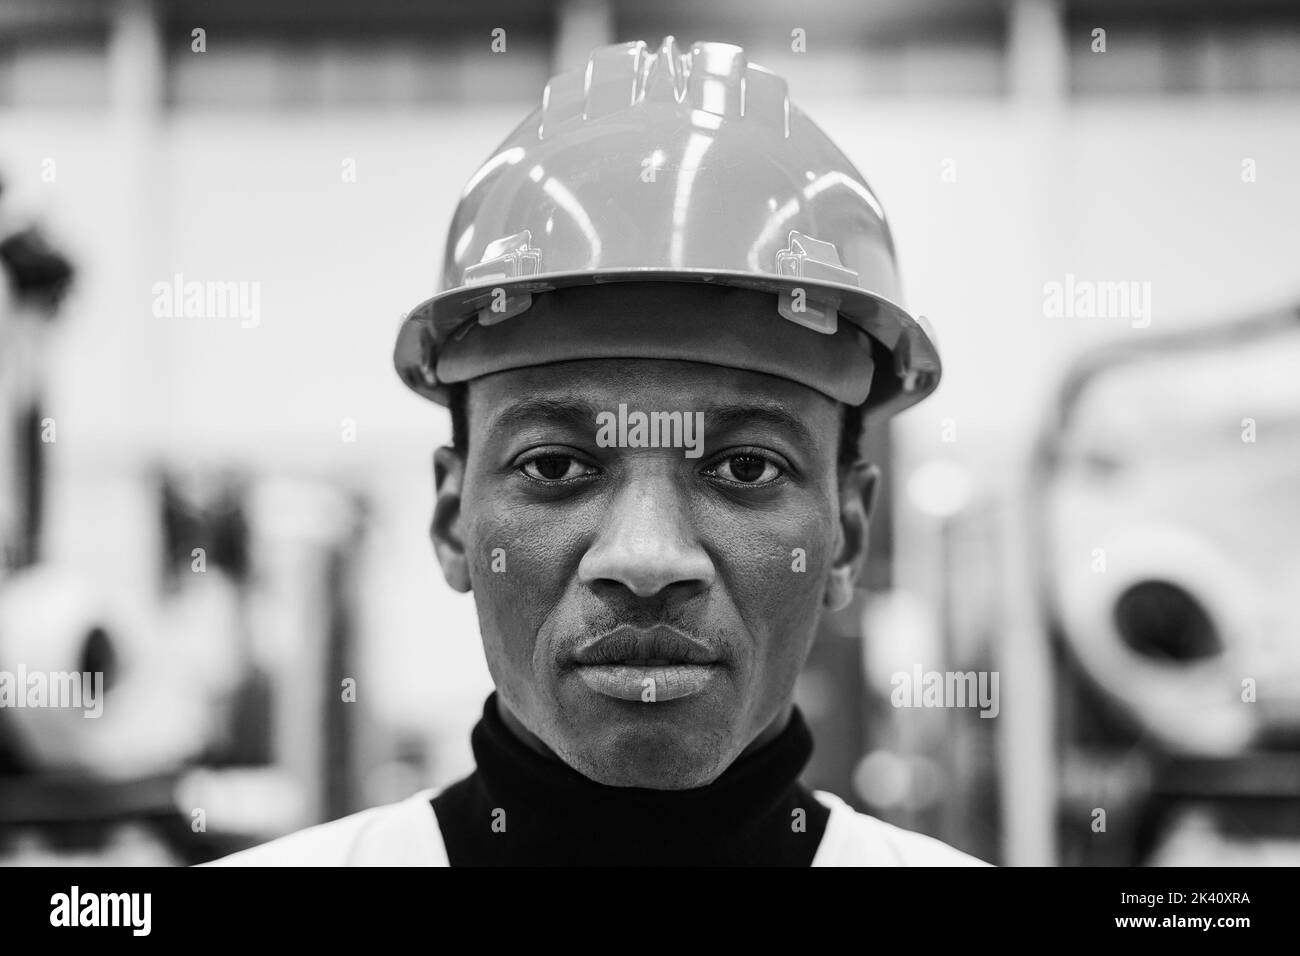 Afrikanischer Ingenieur, der in der Roboterfabrik arbeitet - Fokus auf Gesicht - Schwarz-Weiß-Schnitt Stockfoto